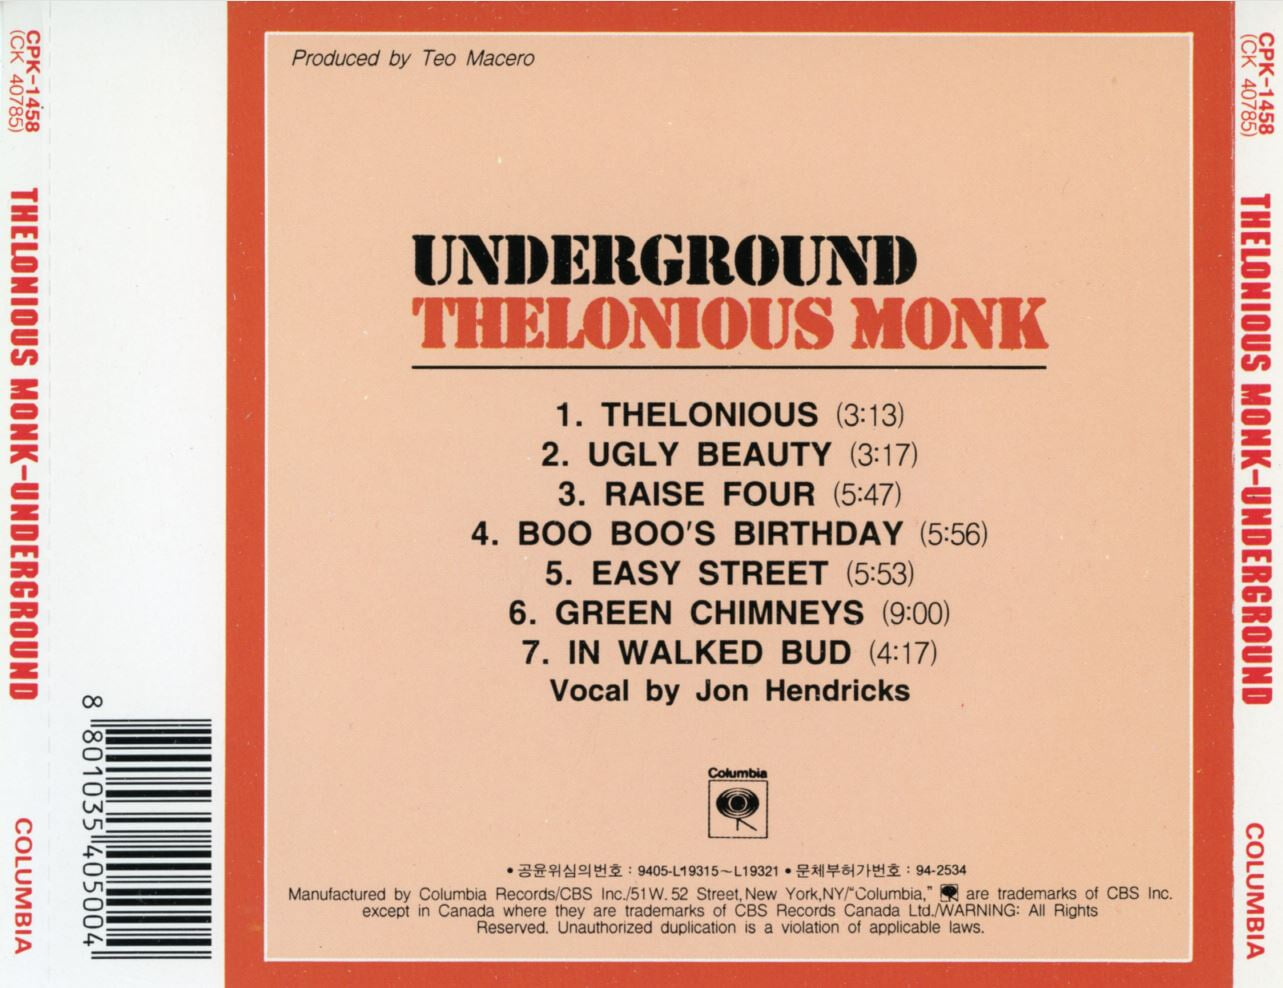 델로니어스 몽크 - Thelonious Monk - Underground